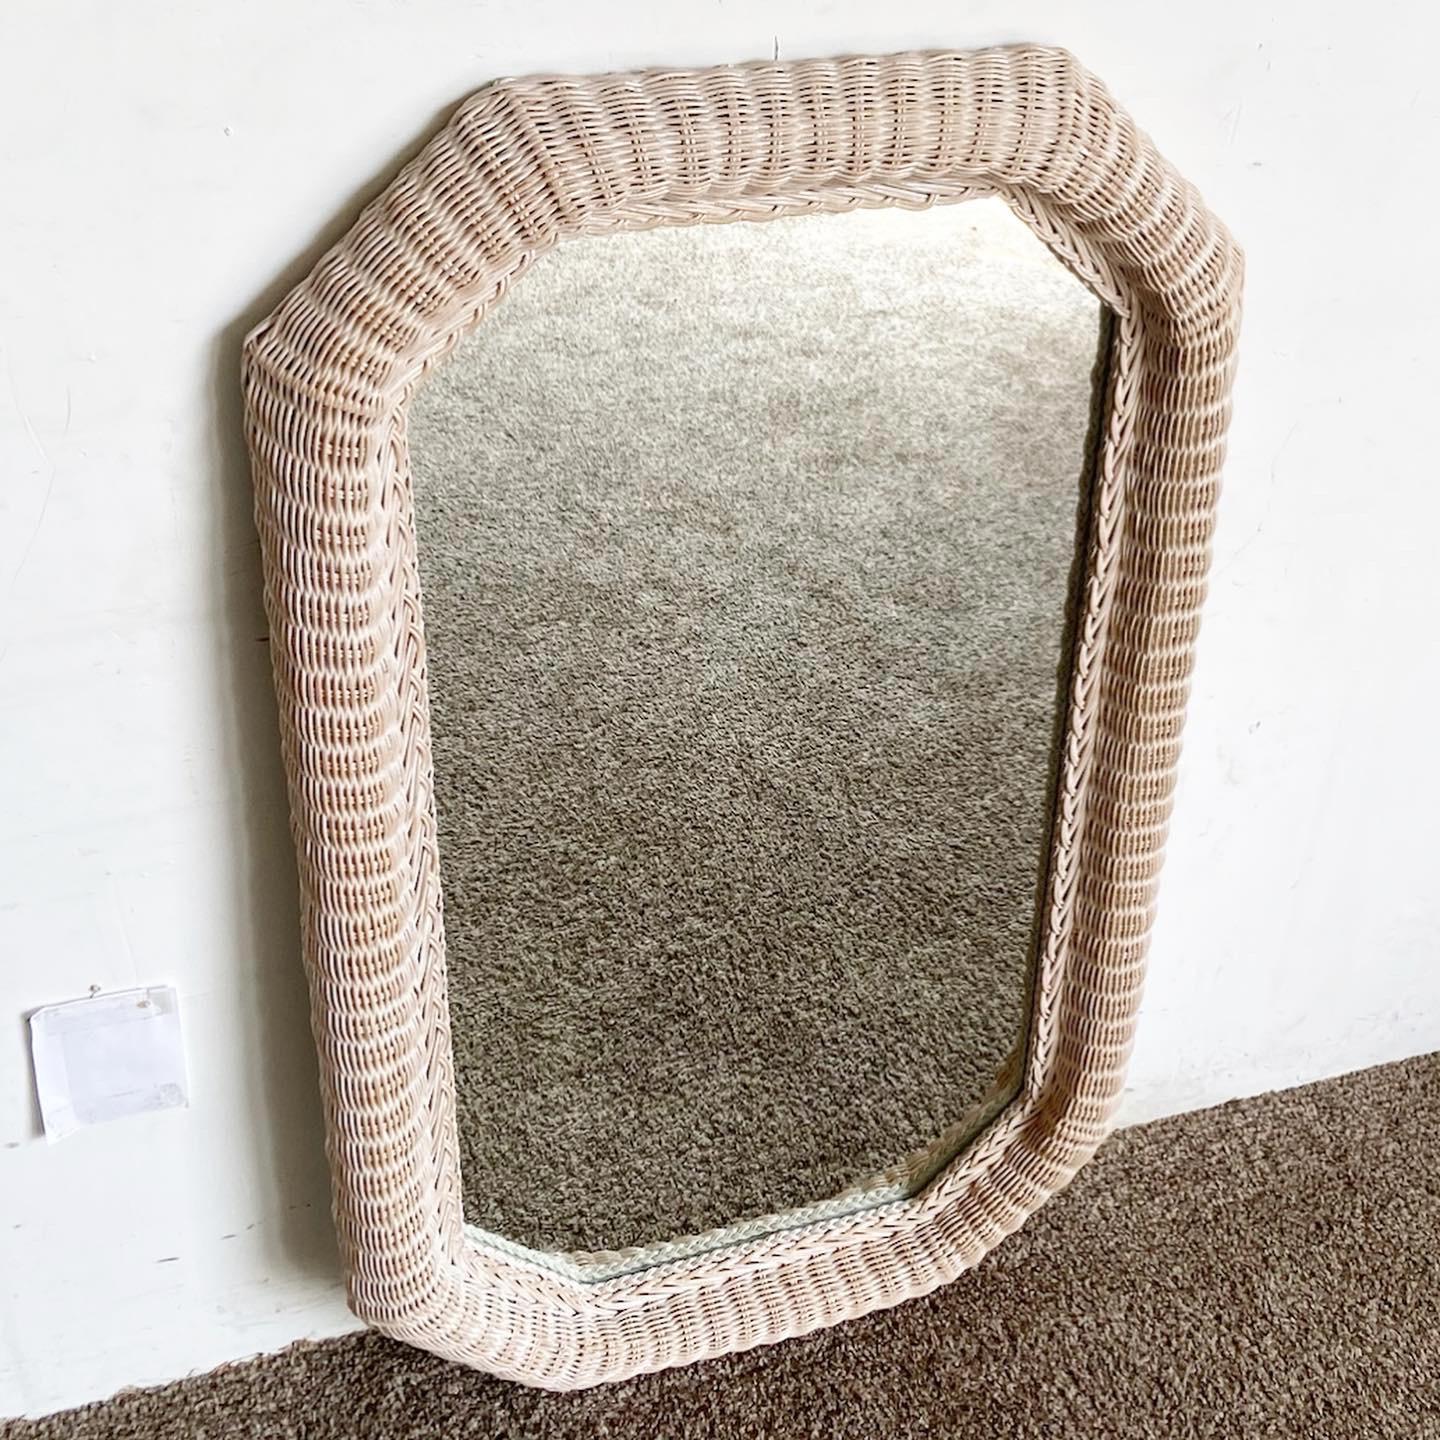 Verschönern Sie Ihr Zuhause mit dem achteckigen Boho Chic Wicker Wall Mirror von Lexington. Dieses auffällige Stück ist kunstvoll aus Weidengeflecht gefertigt und bietet eine strukturierte Ästhetik im Boho-Chic.
Vintage-Stücke können altersbedingte